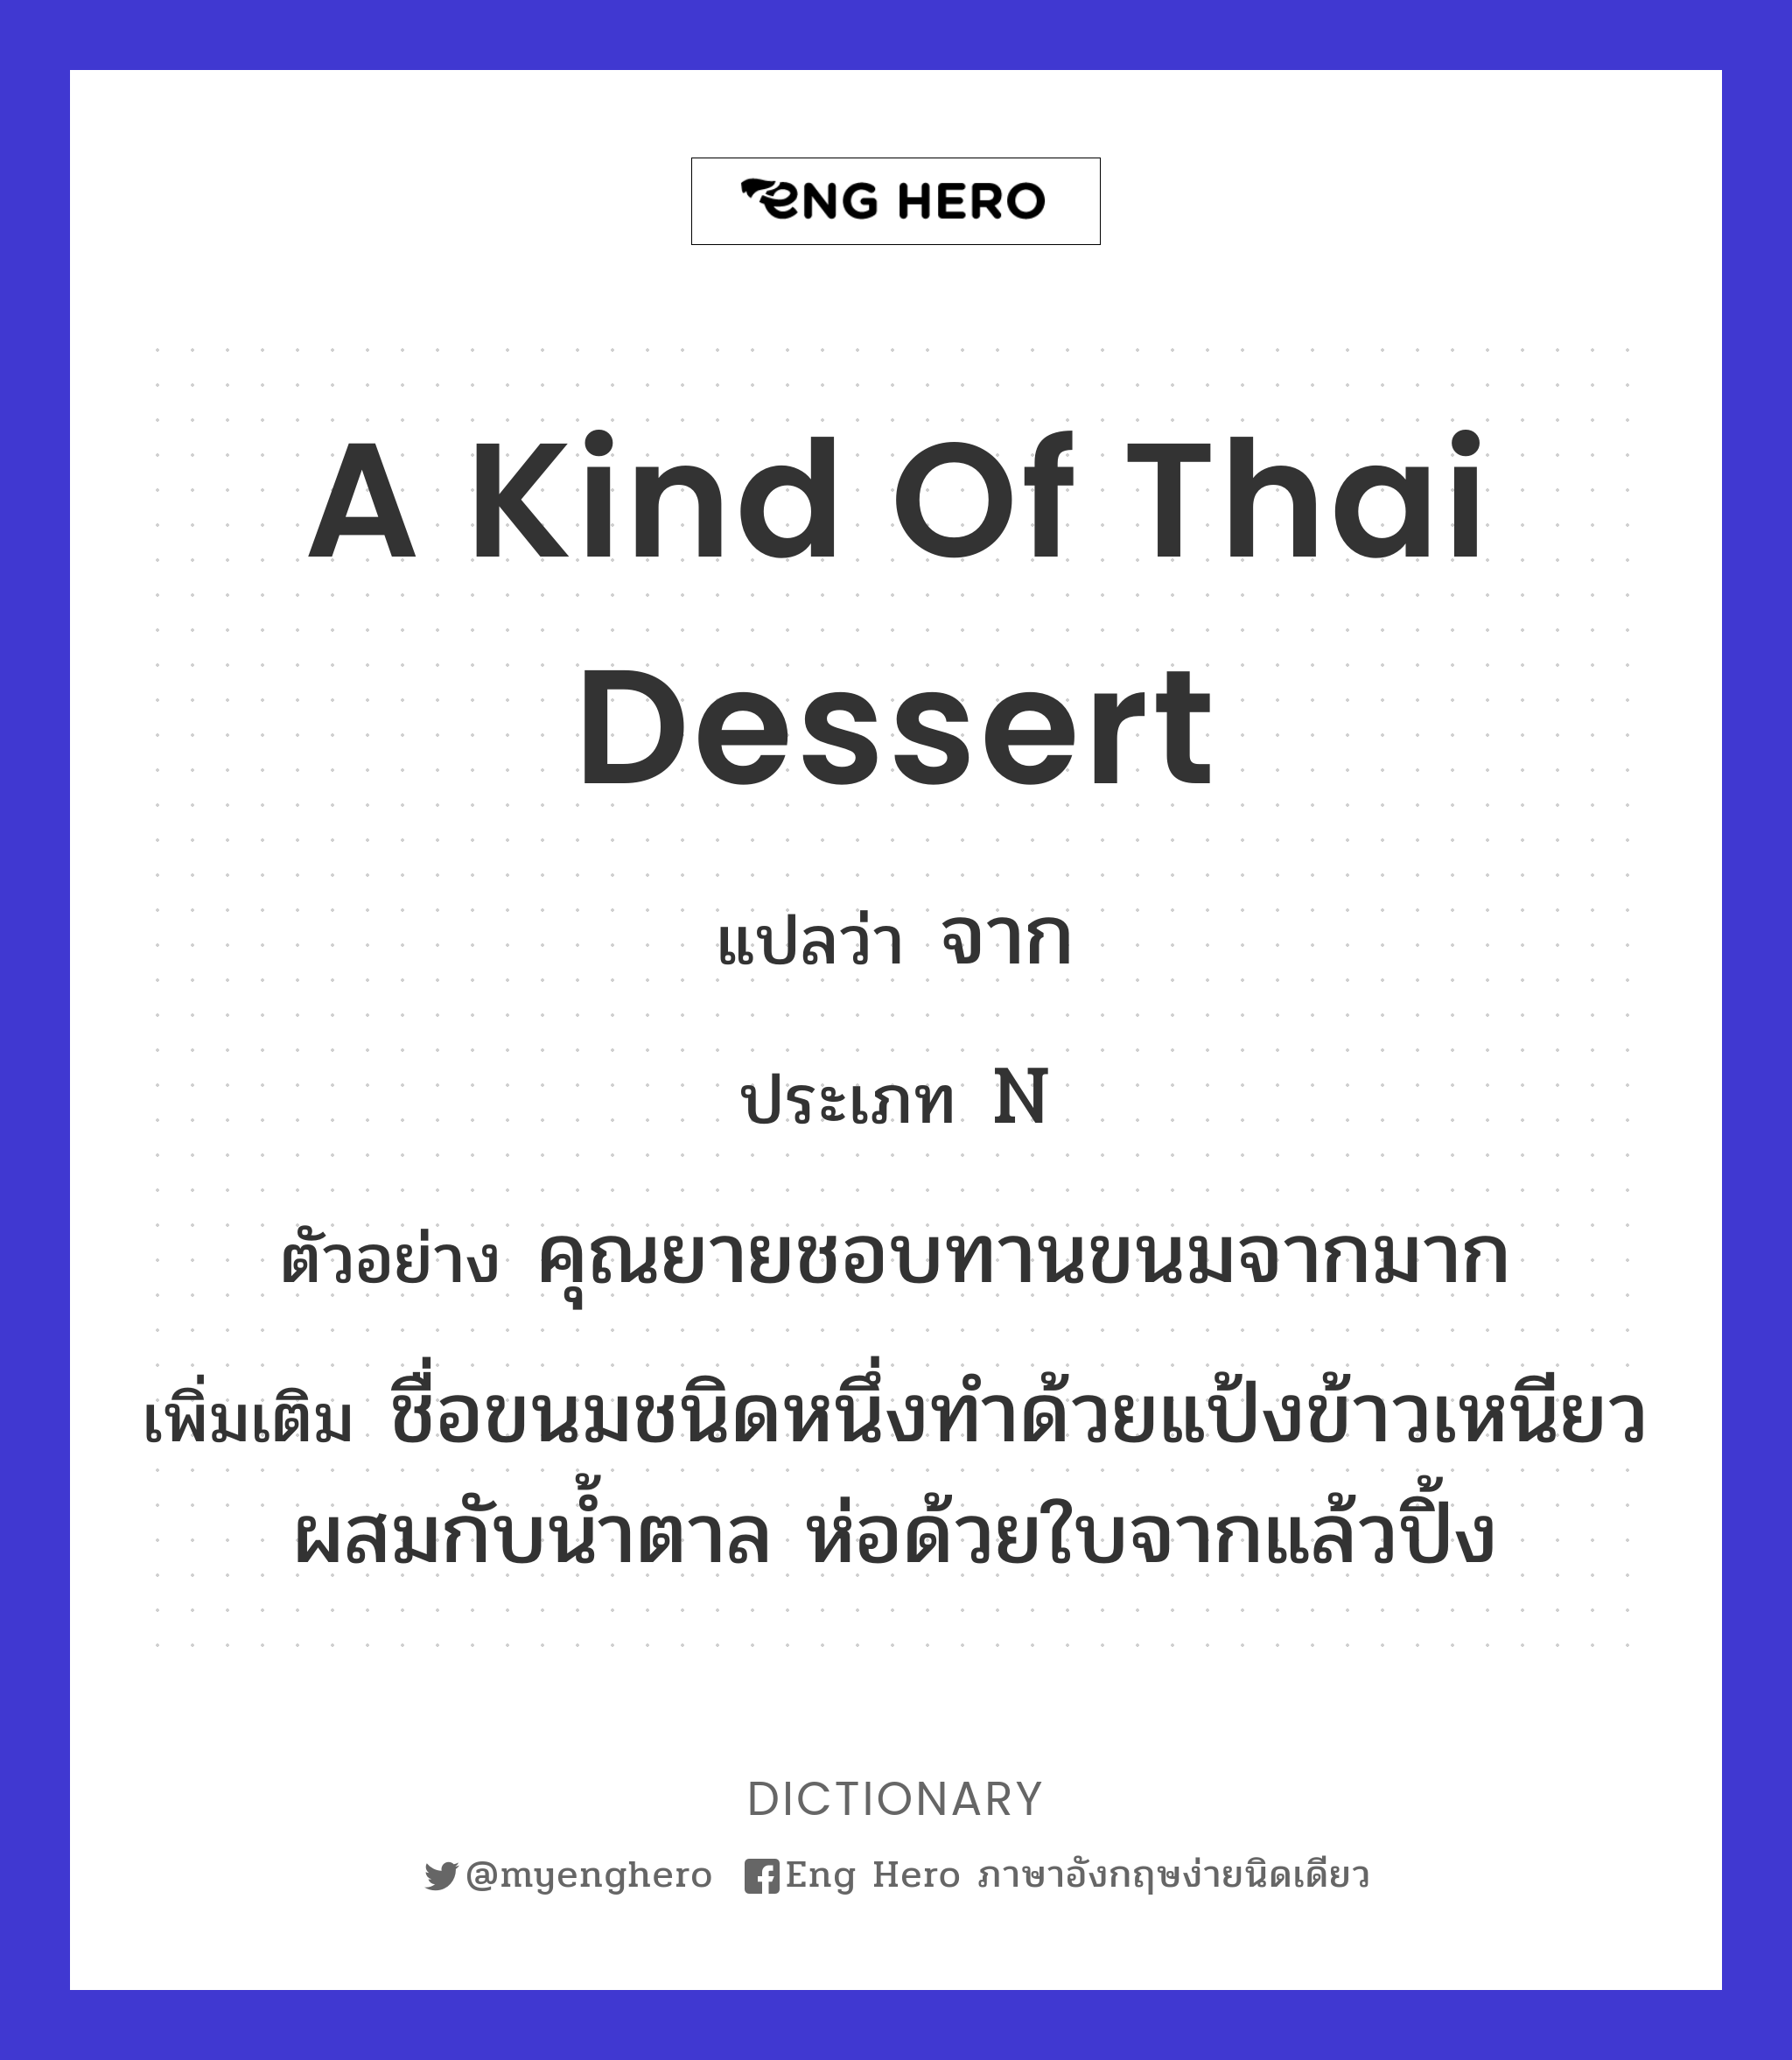 a kind of Thai dessert